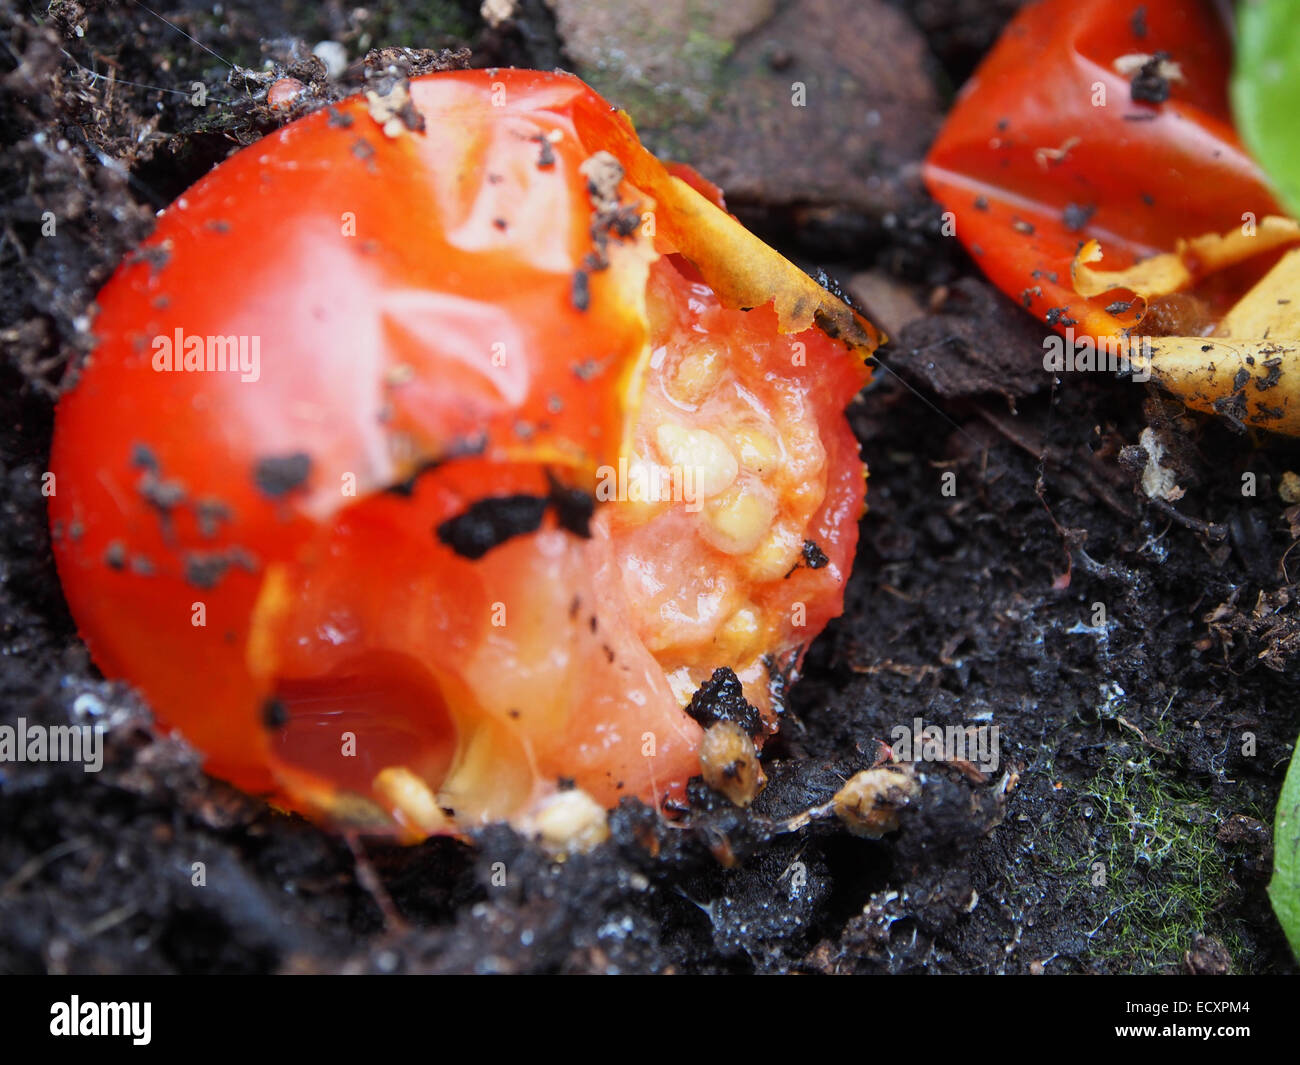 Los tomates en el suelo medio comidos por las babosas e insectos Foto de stock